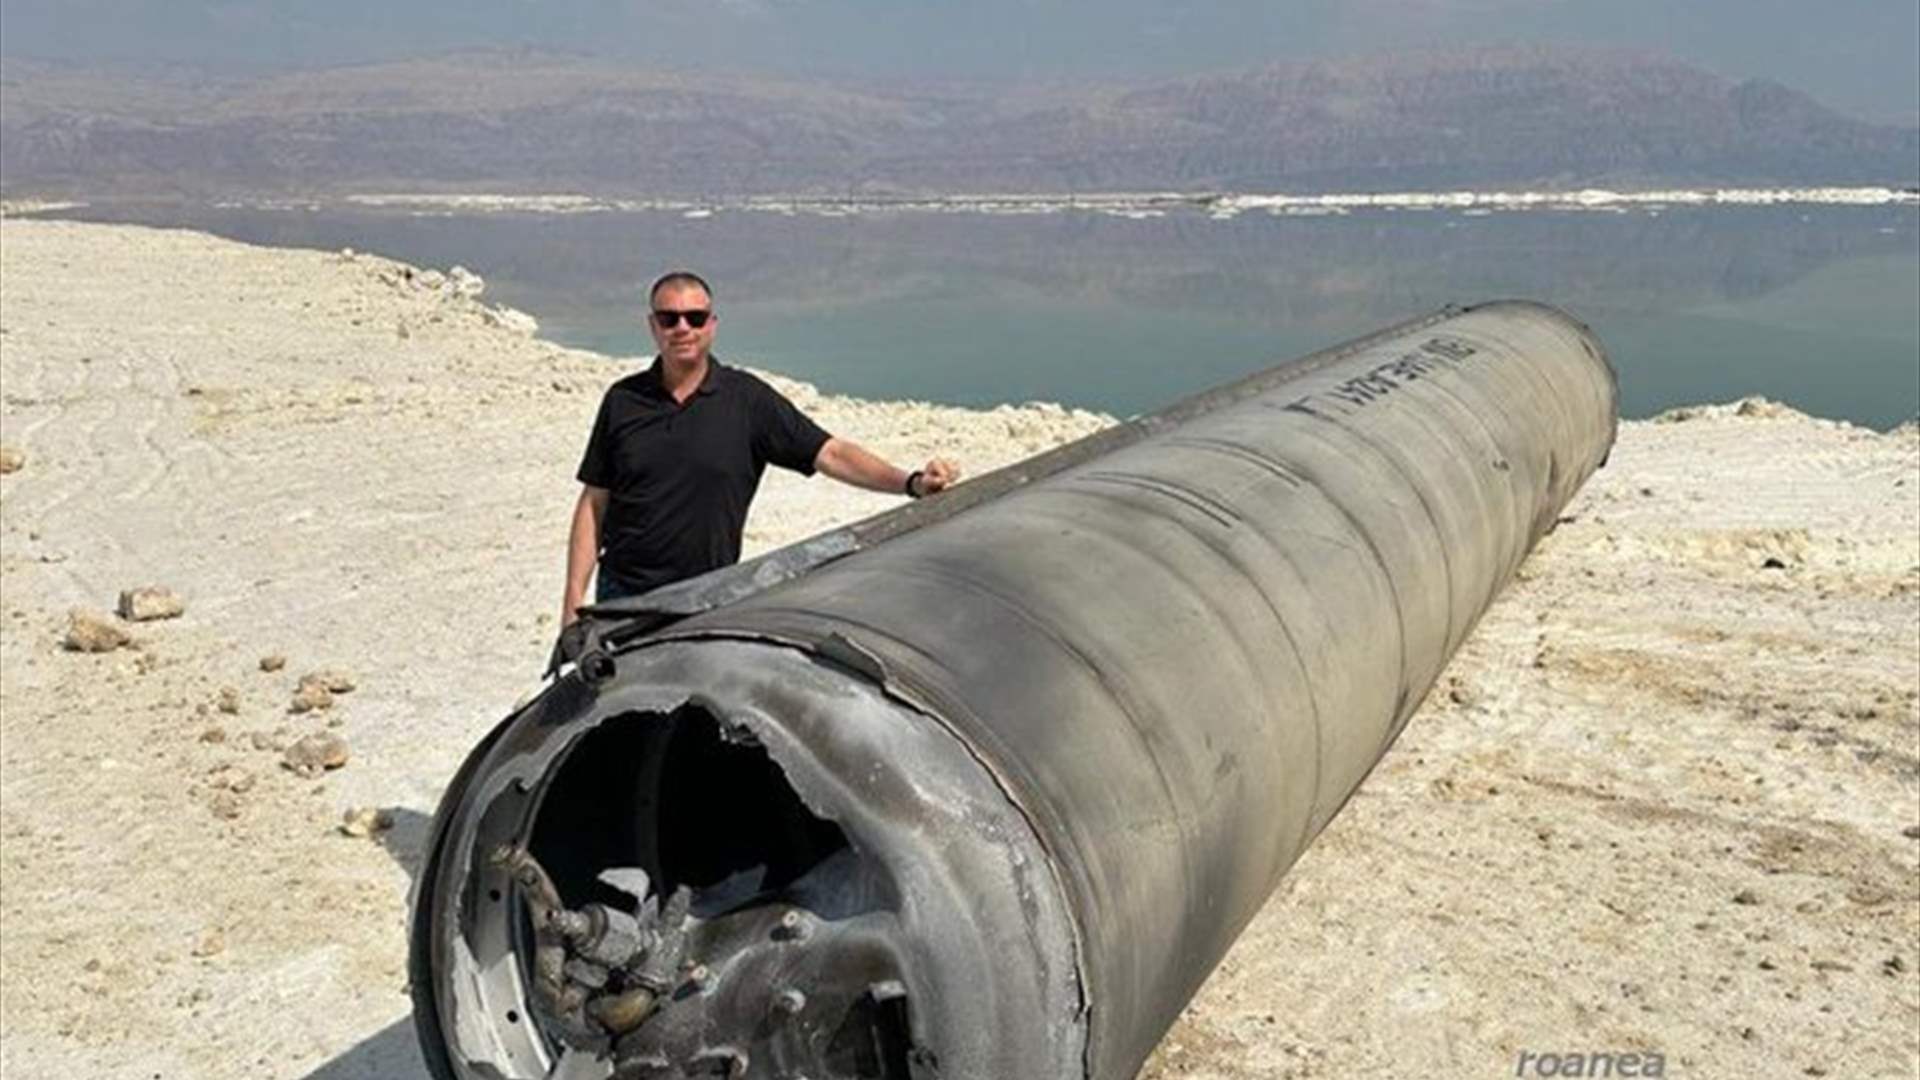 العثور على جزء من صاروخ إيراني تم اعتراضه في البحر الميت 